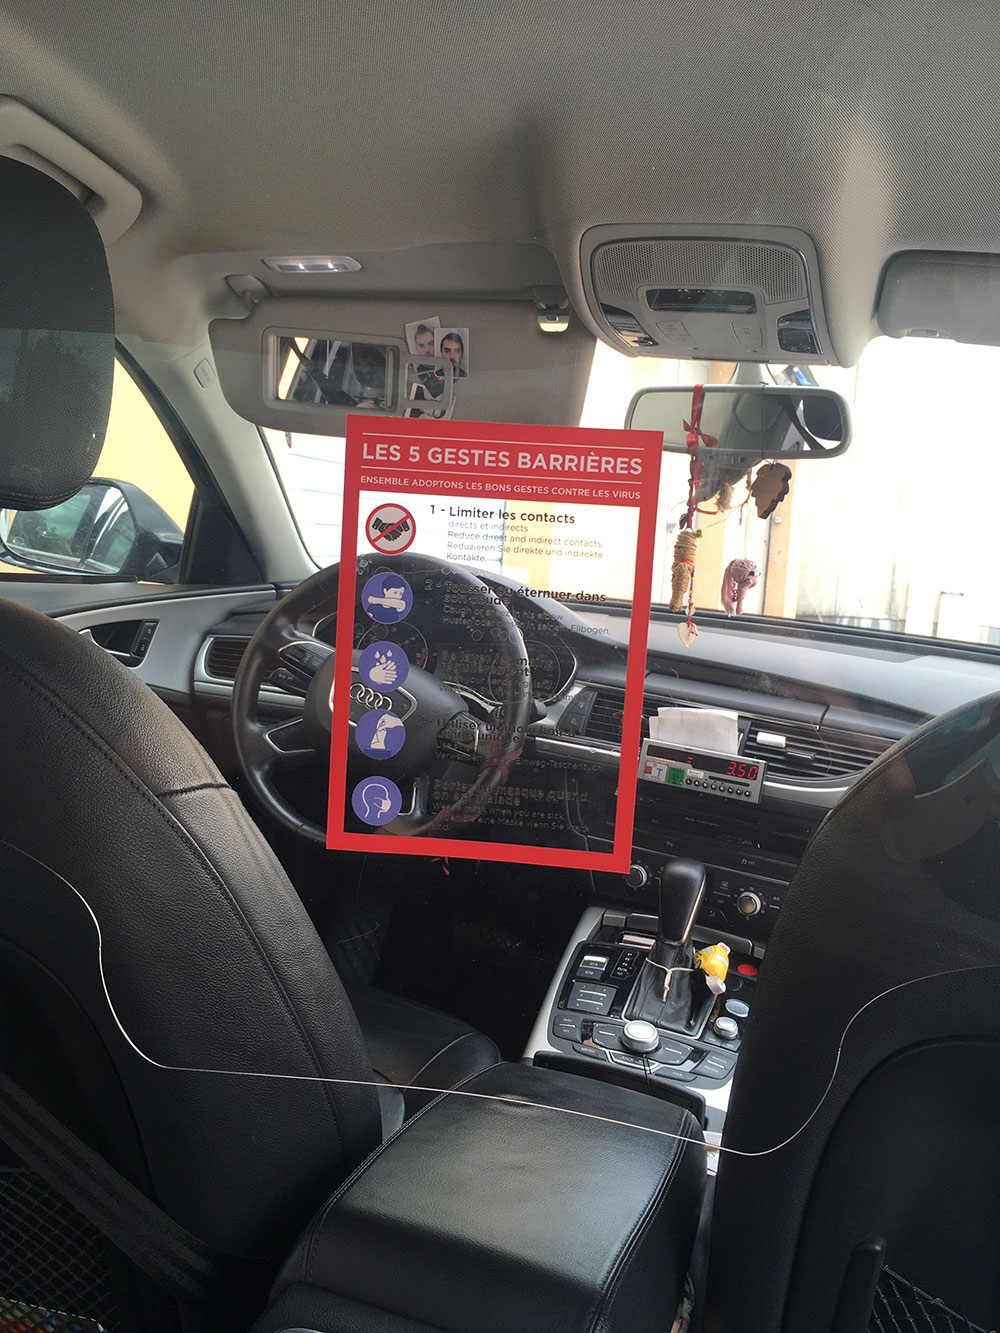 Sticker de rappel des gestes barrières appliqué sur un ecran de séparation chauffeur - passager dans un txi ou vtc